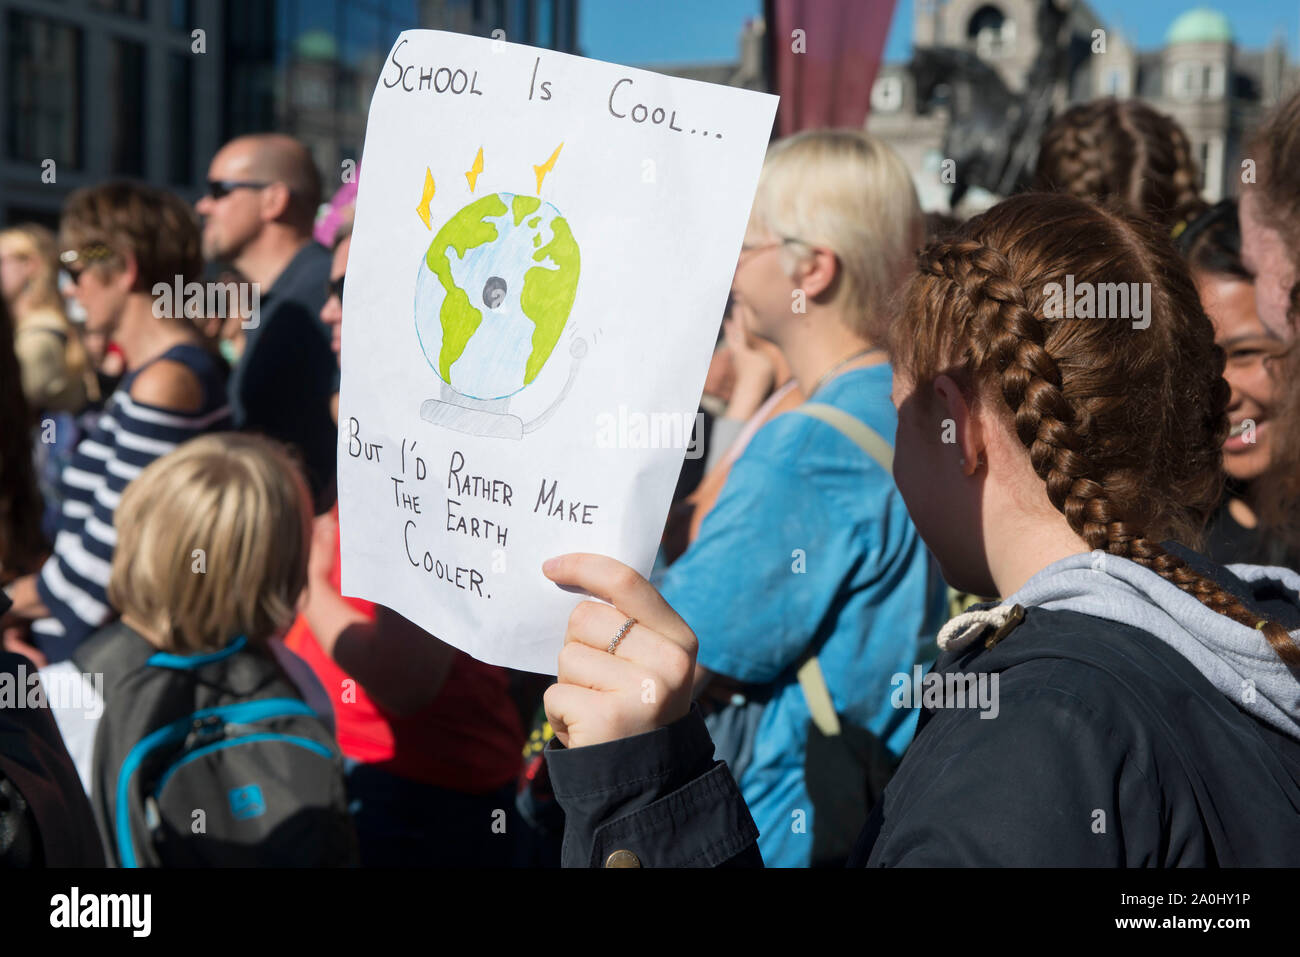 Aberdeen, Großbritannien. 20. September 2019 100 Leute melden Sie das Klima Streik außerhalb Marischal Collage. Credit Paul Glendell/Alamy leben Nachrichten Stockfoto